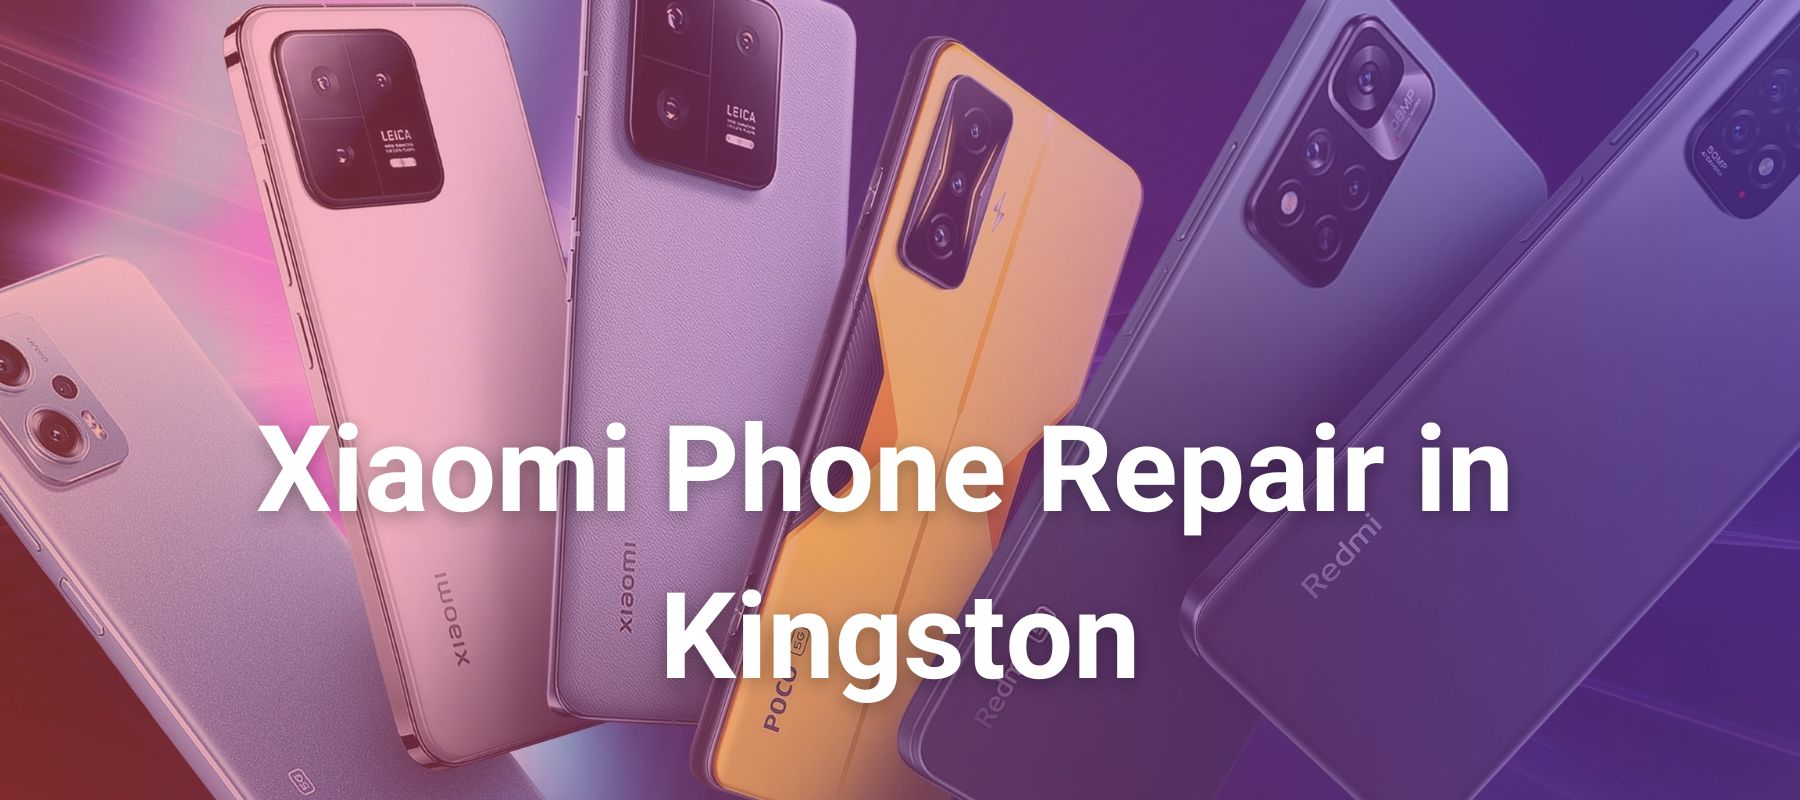 Xiaomi Phone Repair in Kingston